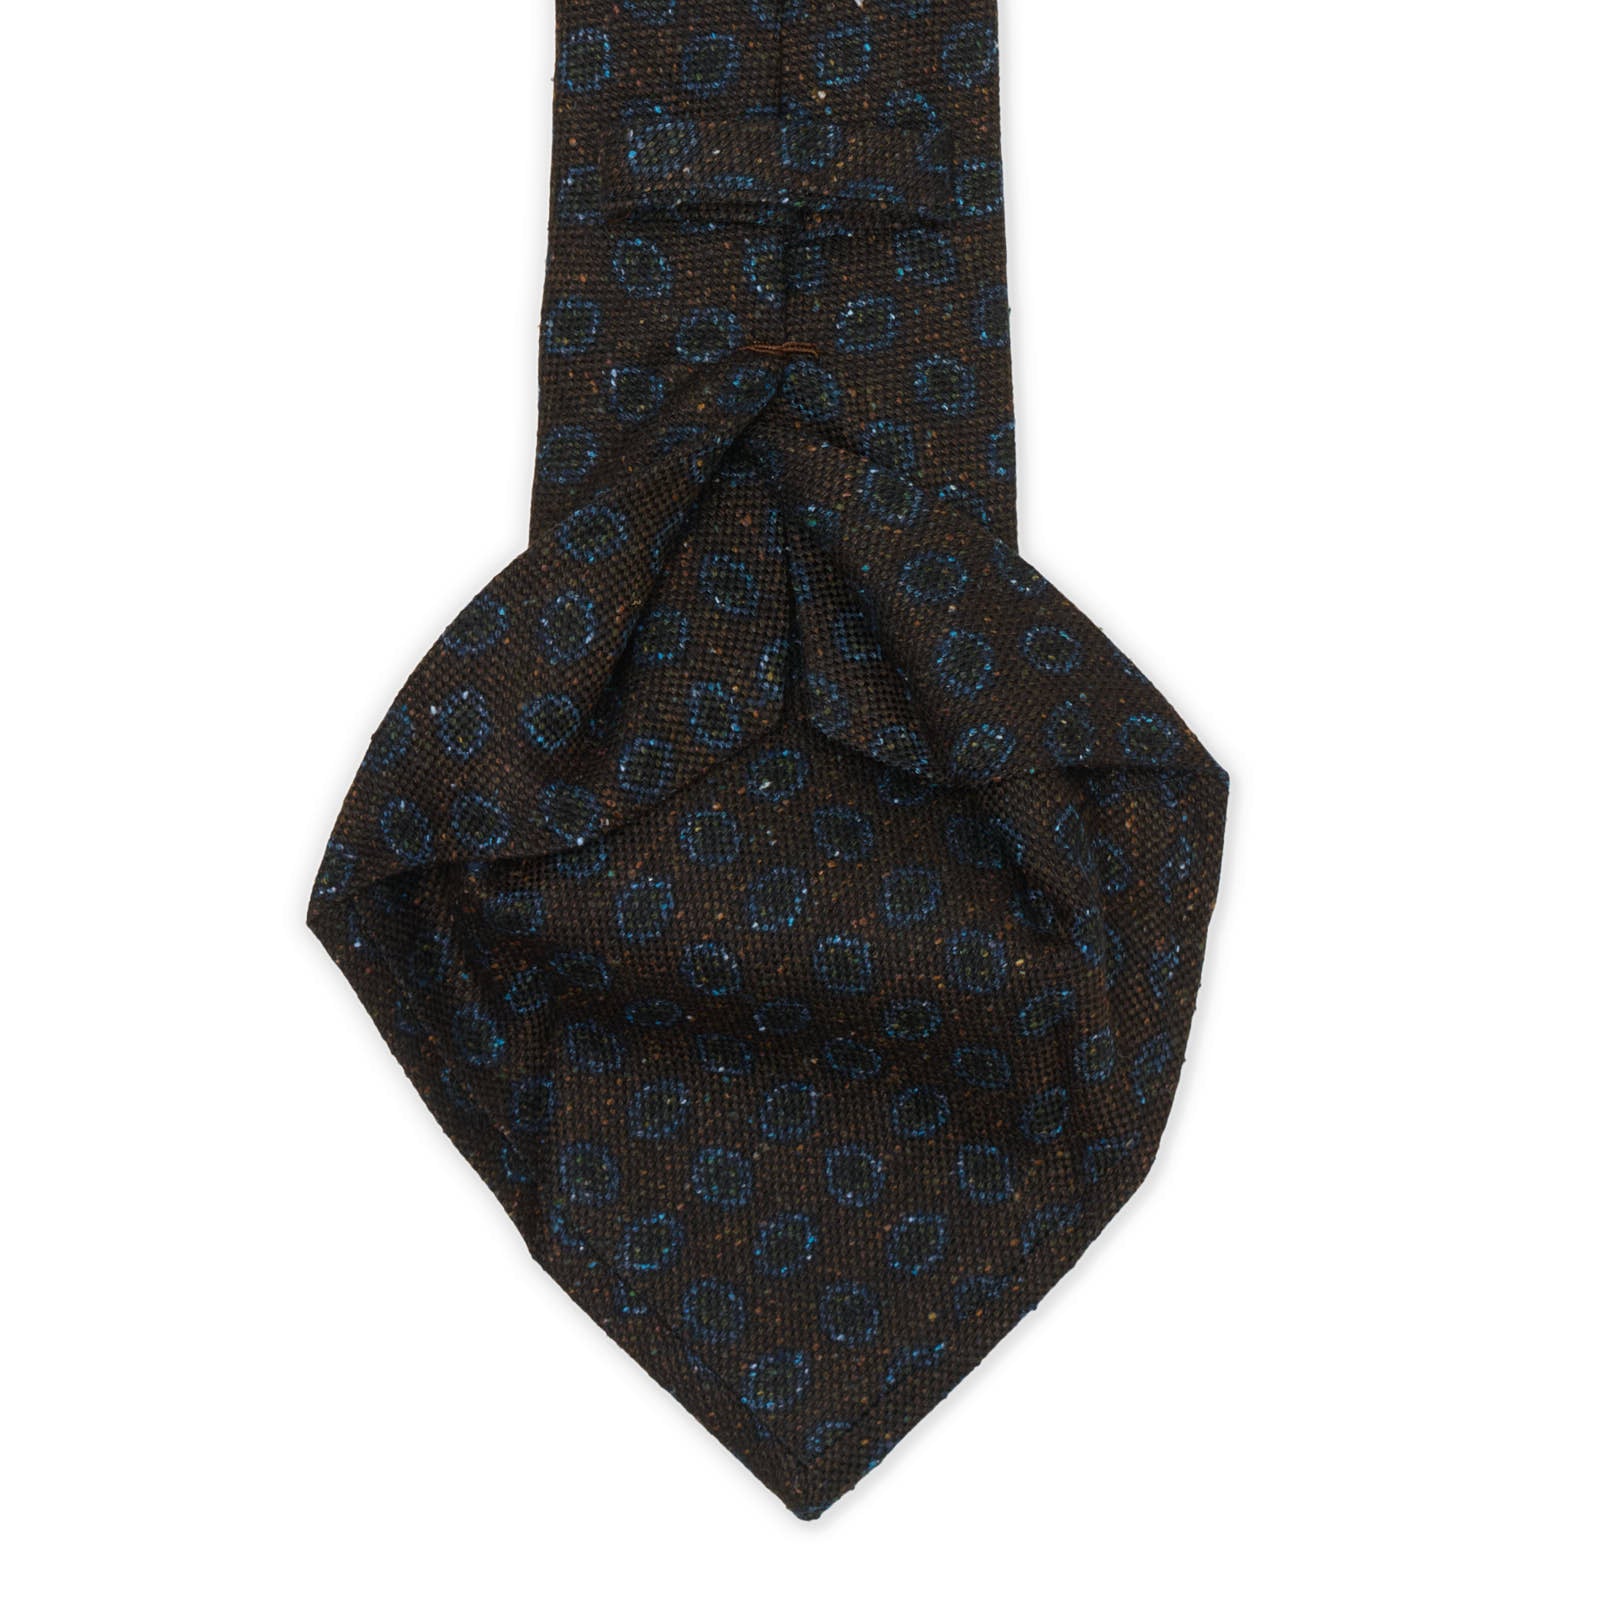 KITON Dark Dark Brown-Blue Medallion Seven Fold Wool-Silk Tie NEW